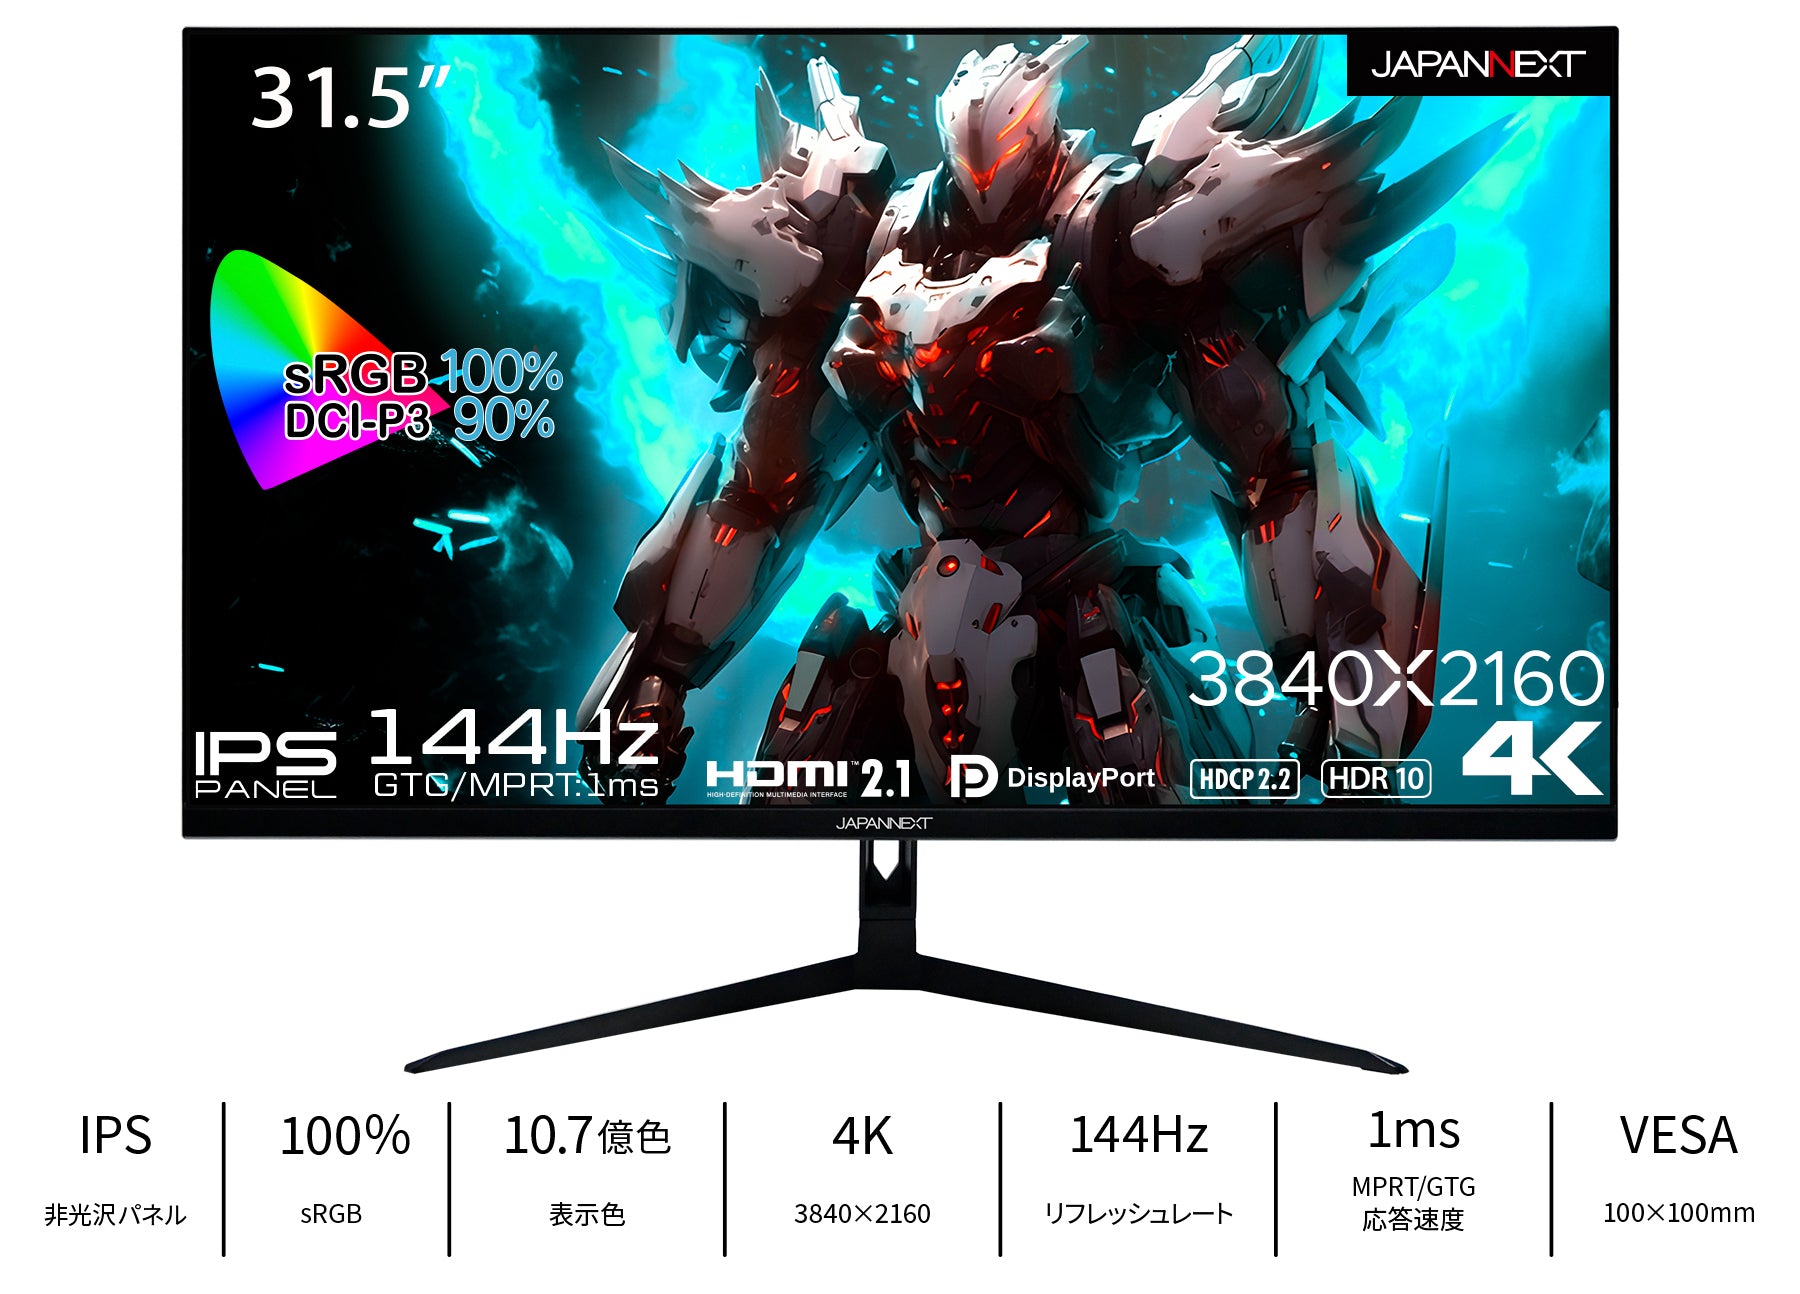 JAPANNEXT 31.5インチ IPSパネル 4K(3840x2160)解像度 144Hz対応 